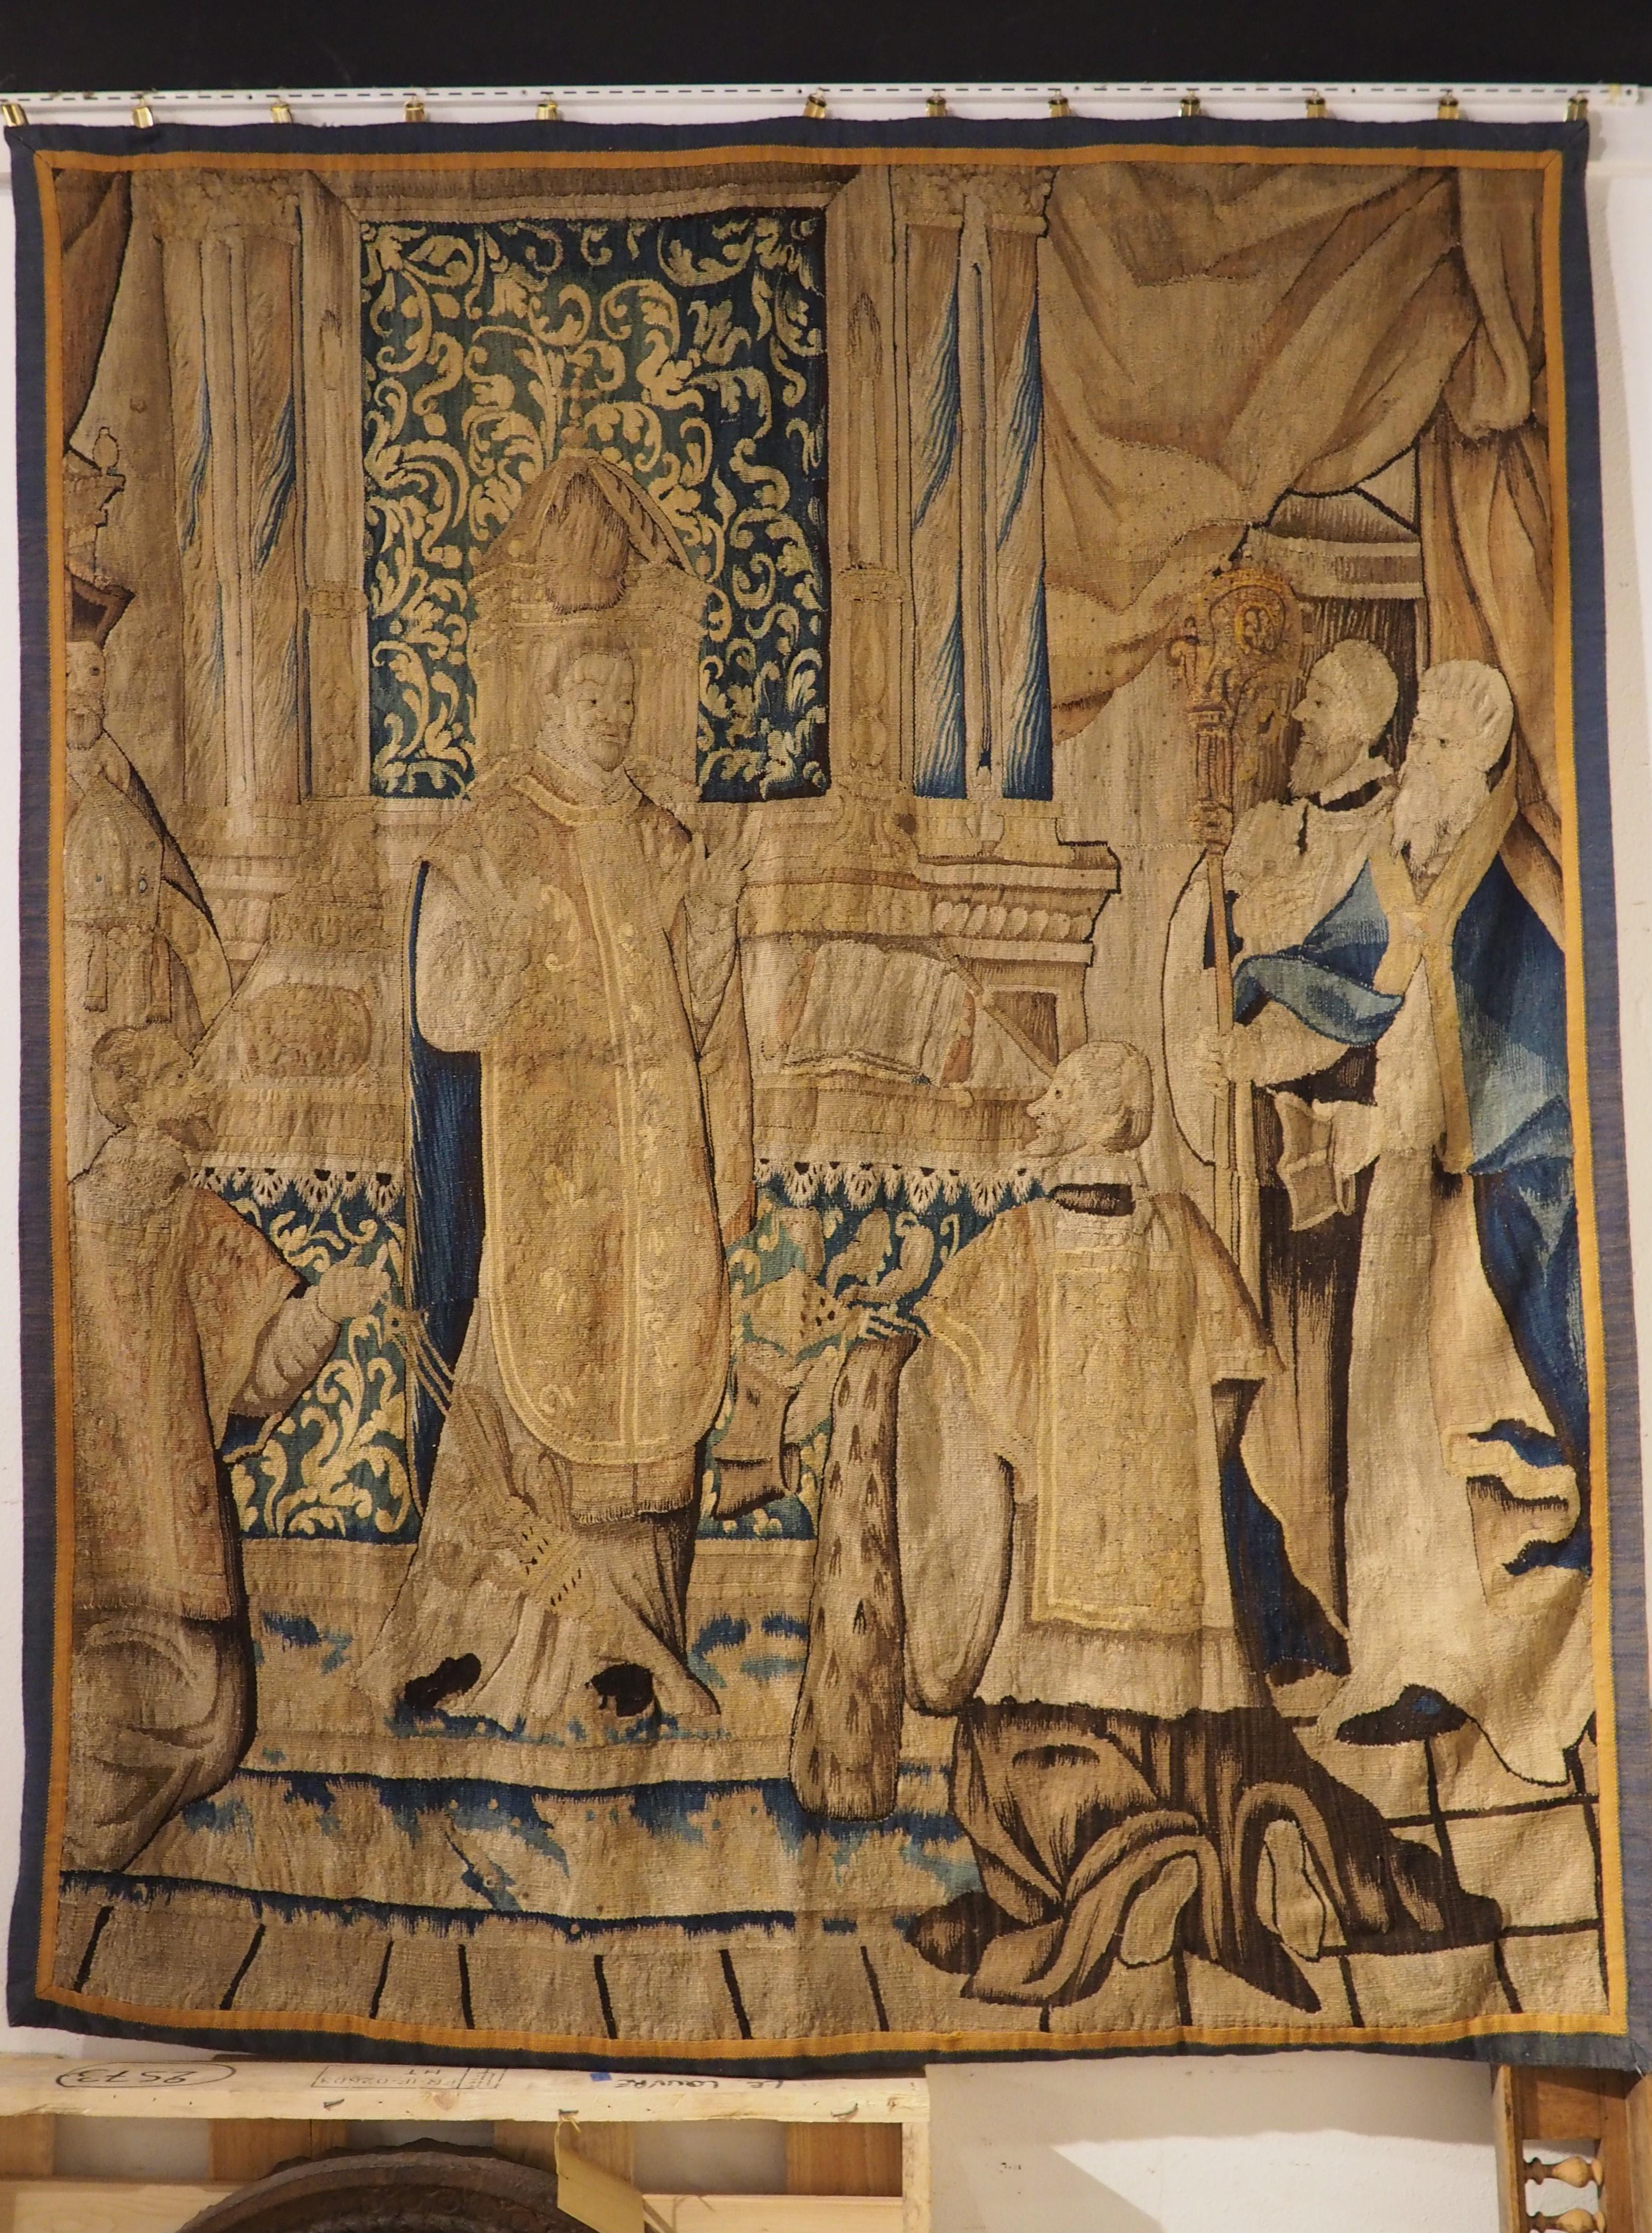 Tissée à la main à Bruxelles vers 1650, cette tapisserie de laine et de soie représente une scène d'église avec six ecclésiastiques devant un autel. Après environ 375 ans, les couleurs sont toujours aussi vives, soulignées par des tissus bleus qui